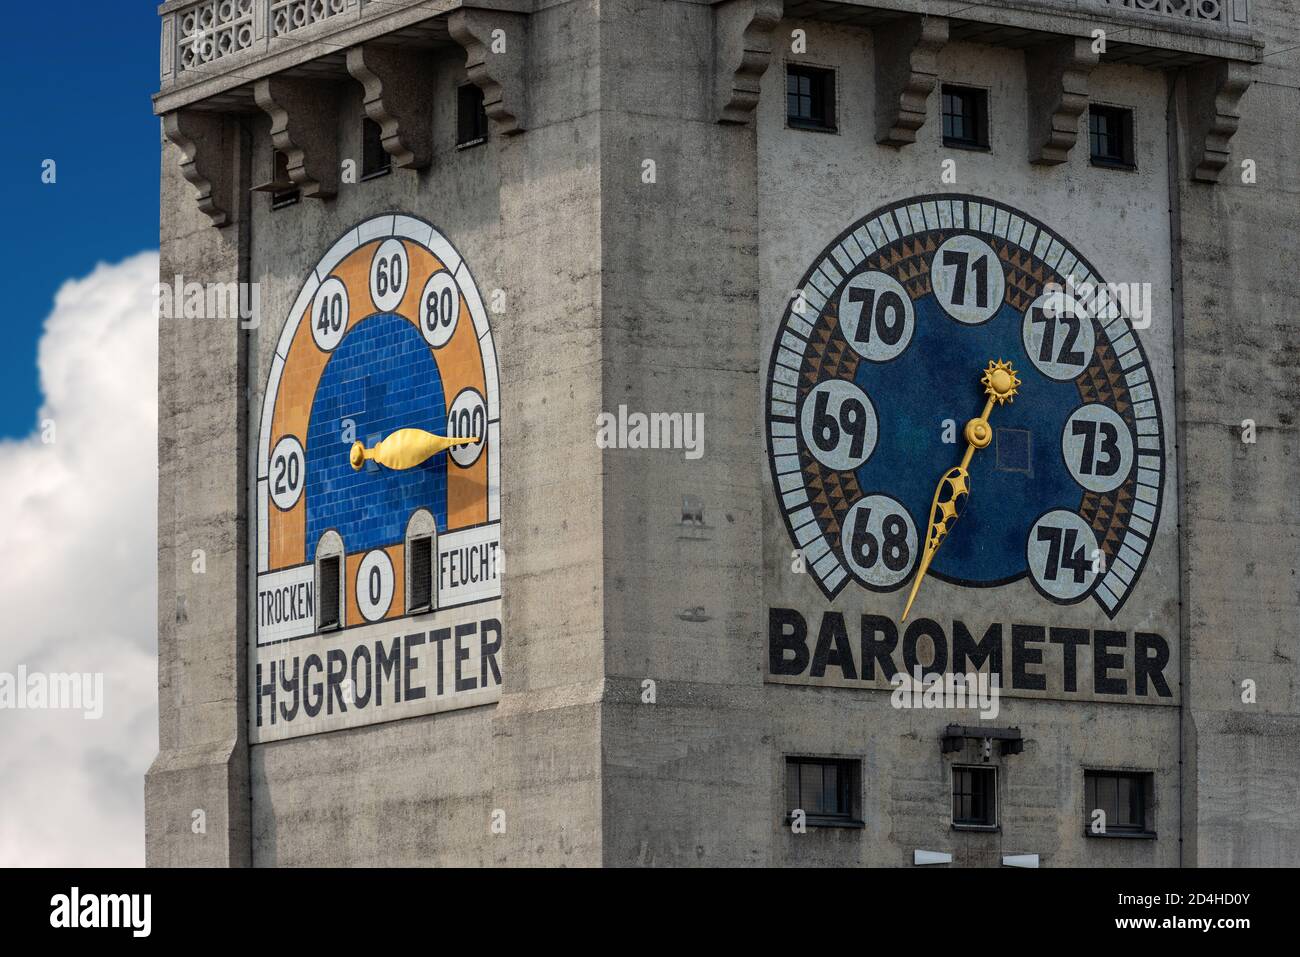 Nahaufnahme der Wetterturmstation (Wetterturm) mit Barometer und Hygrometer des Deutschen Museums, München, Bayern, Deutschland, Europa. Stockfoto